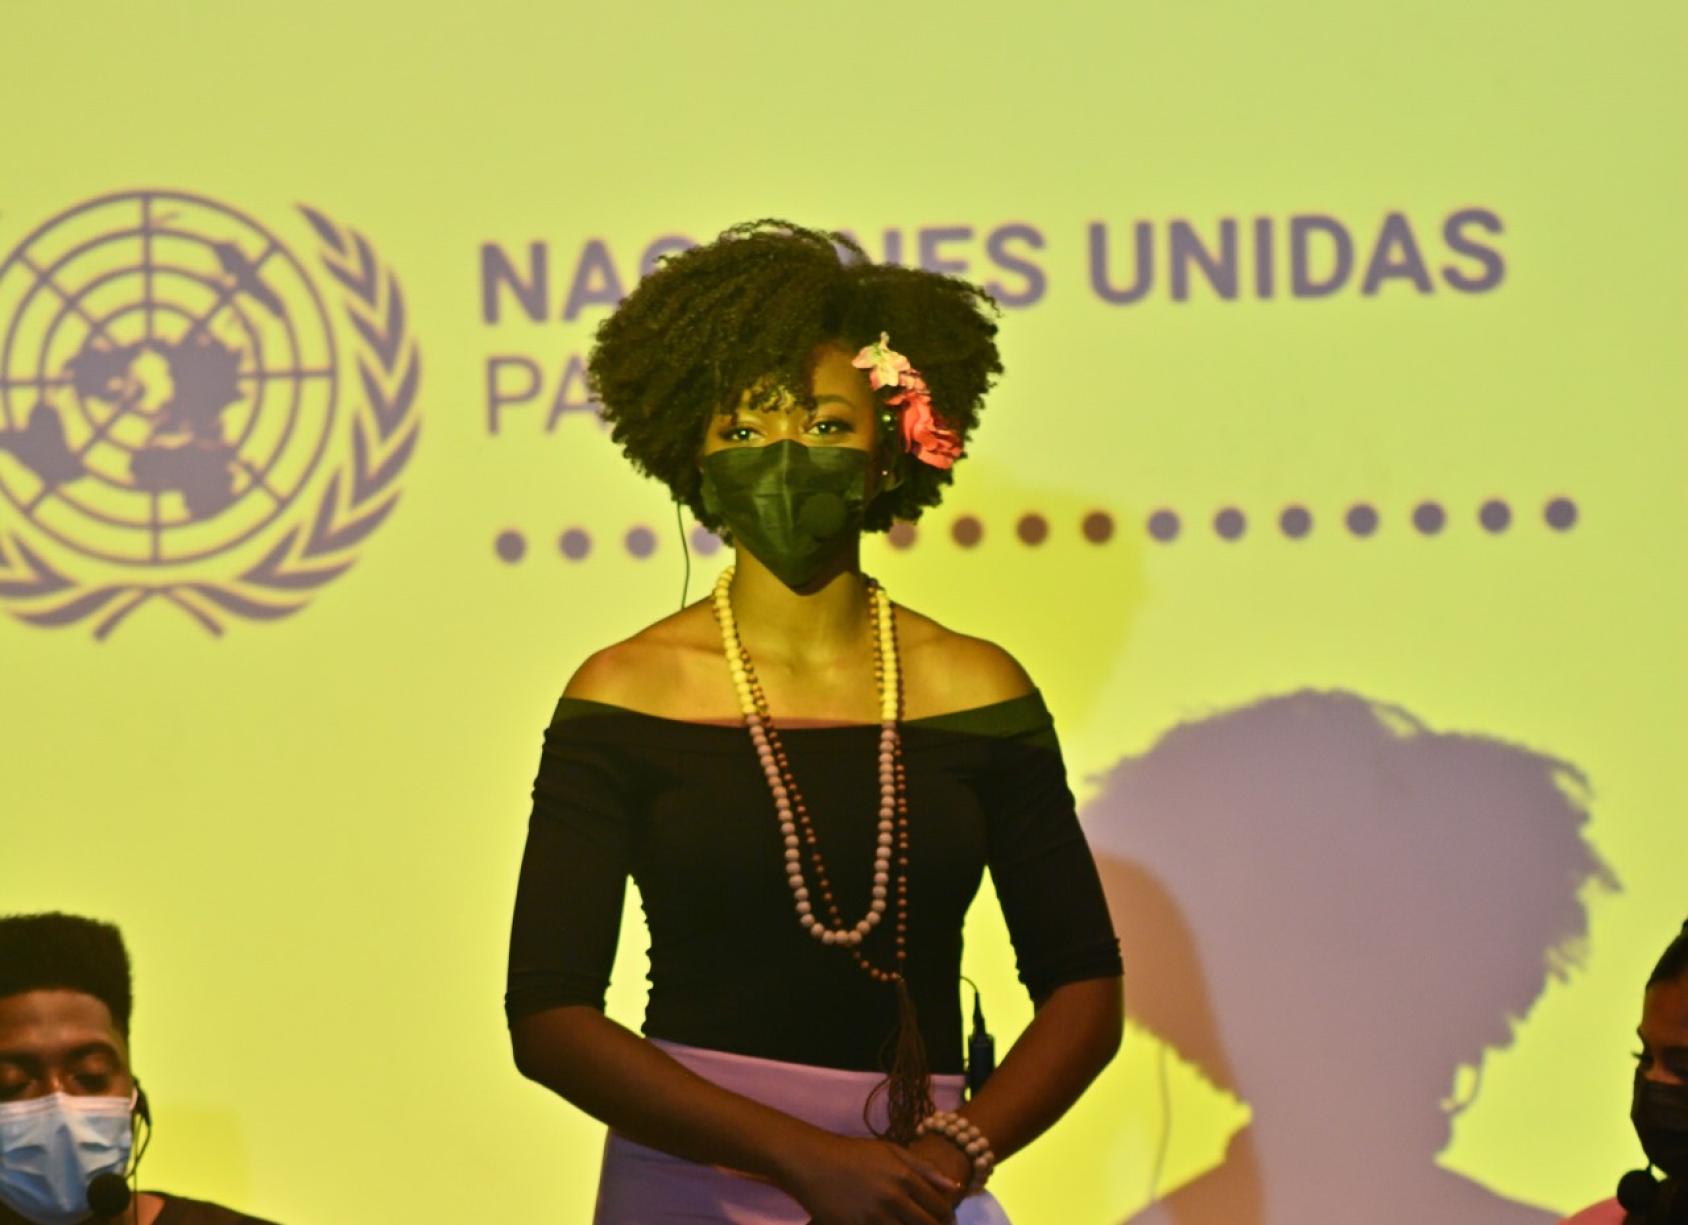 一名戴着口罩的妇女站在联合国驻巴拿马系统标志前。